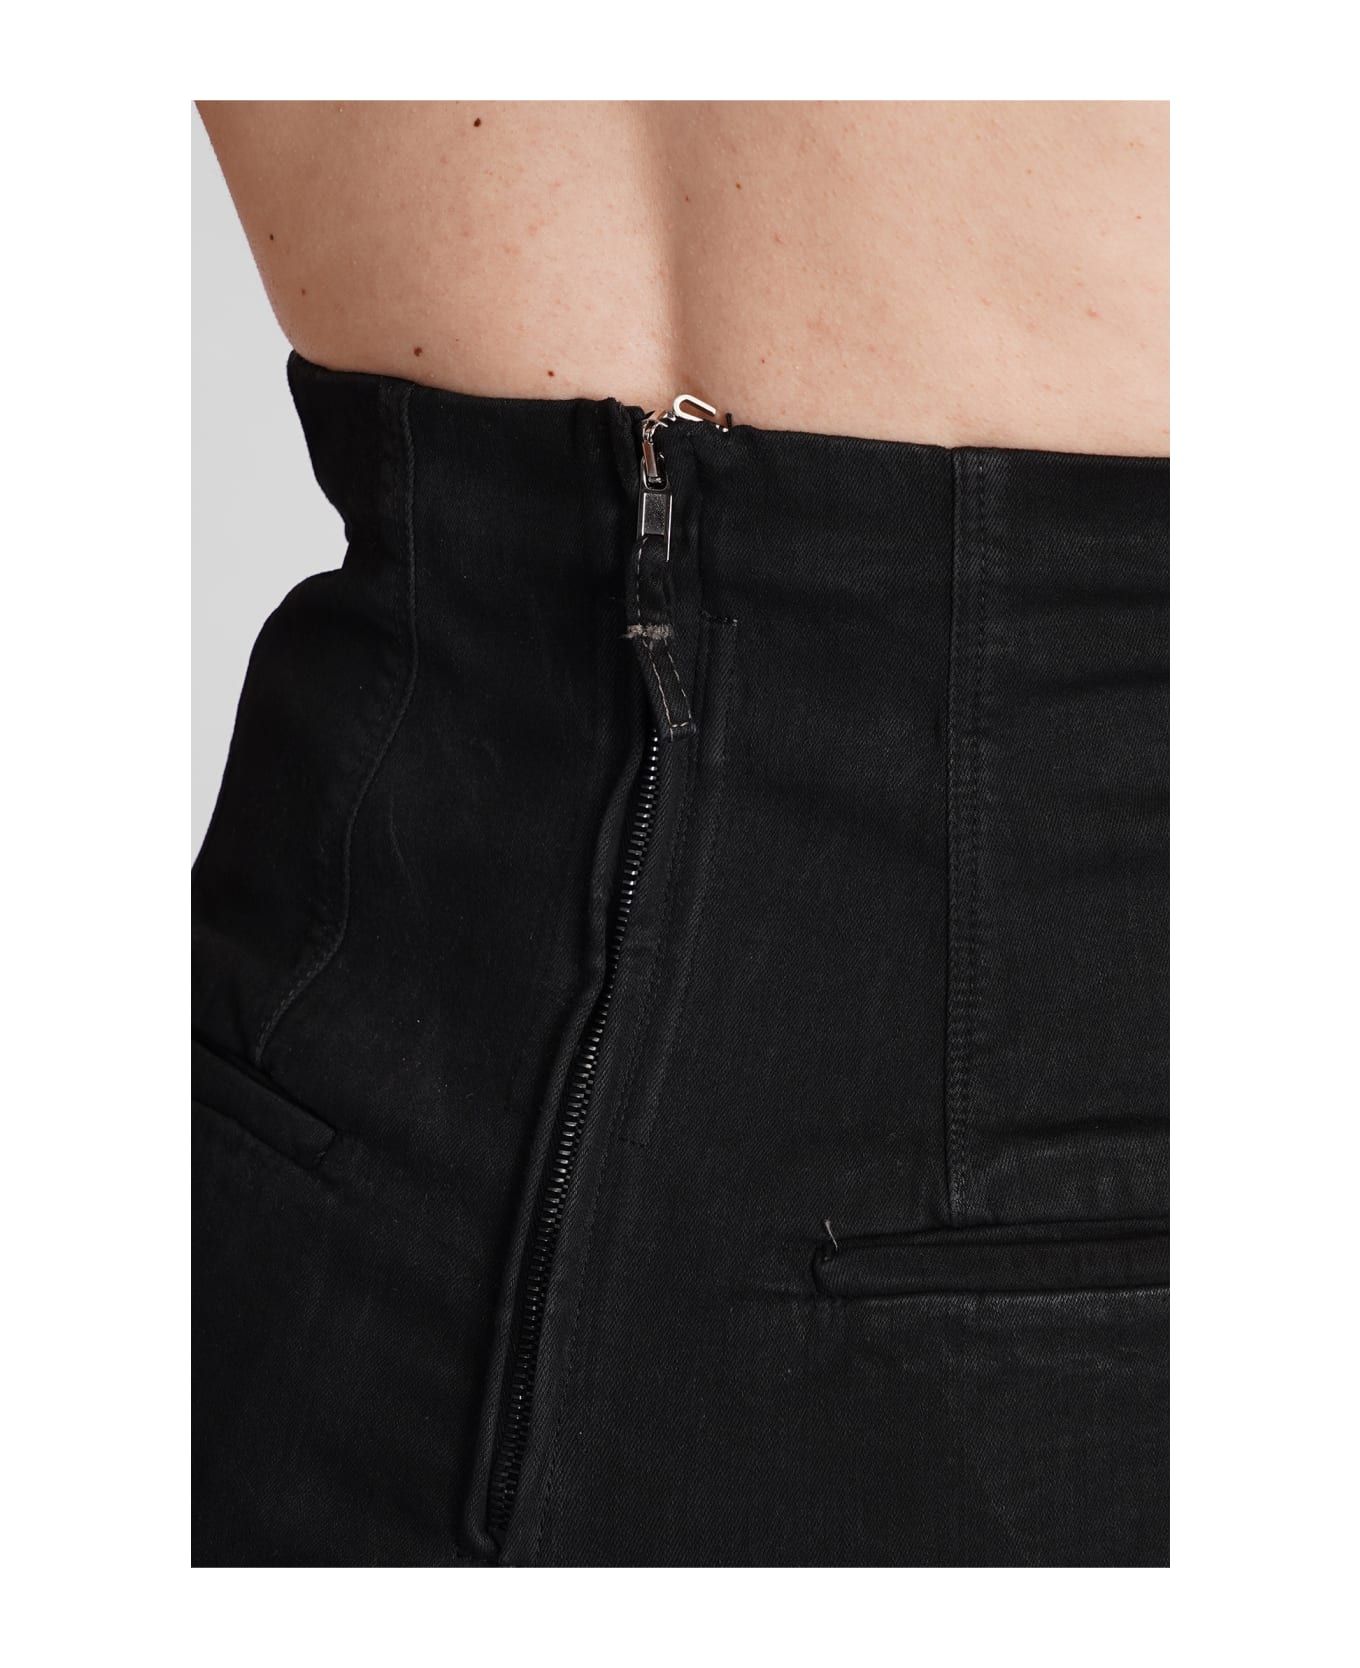 DRKSHDW Dirt Cutoffs Shorts In Black Cotton - BKACK